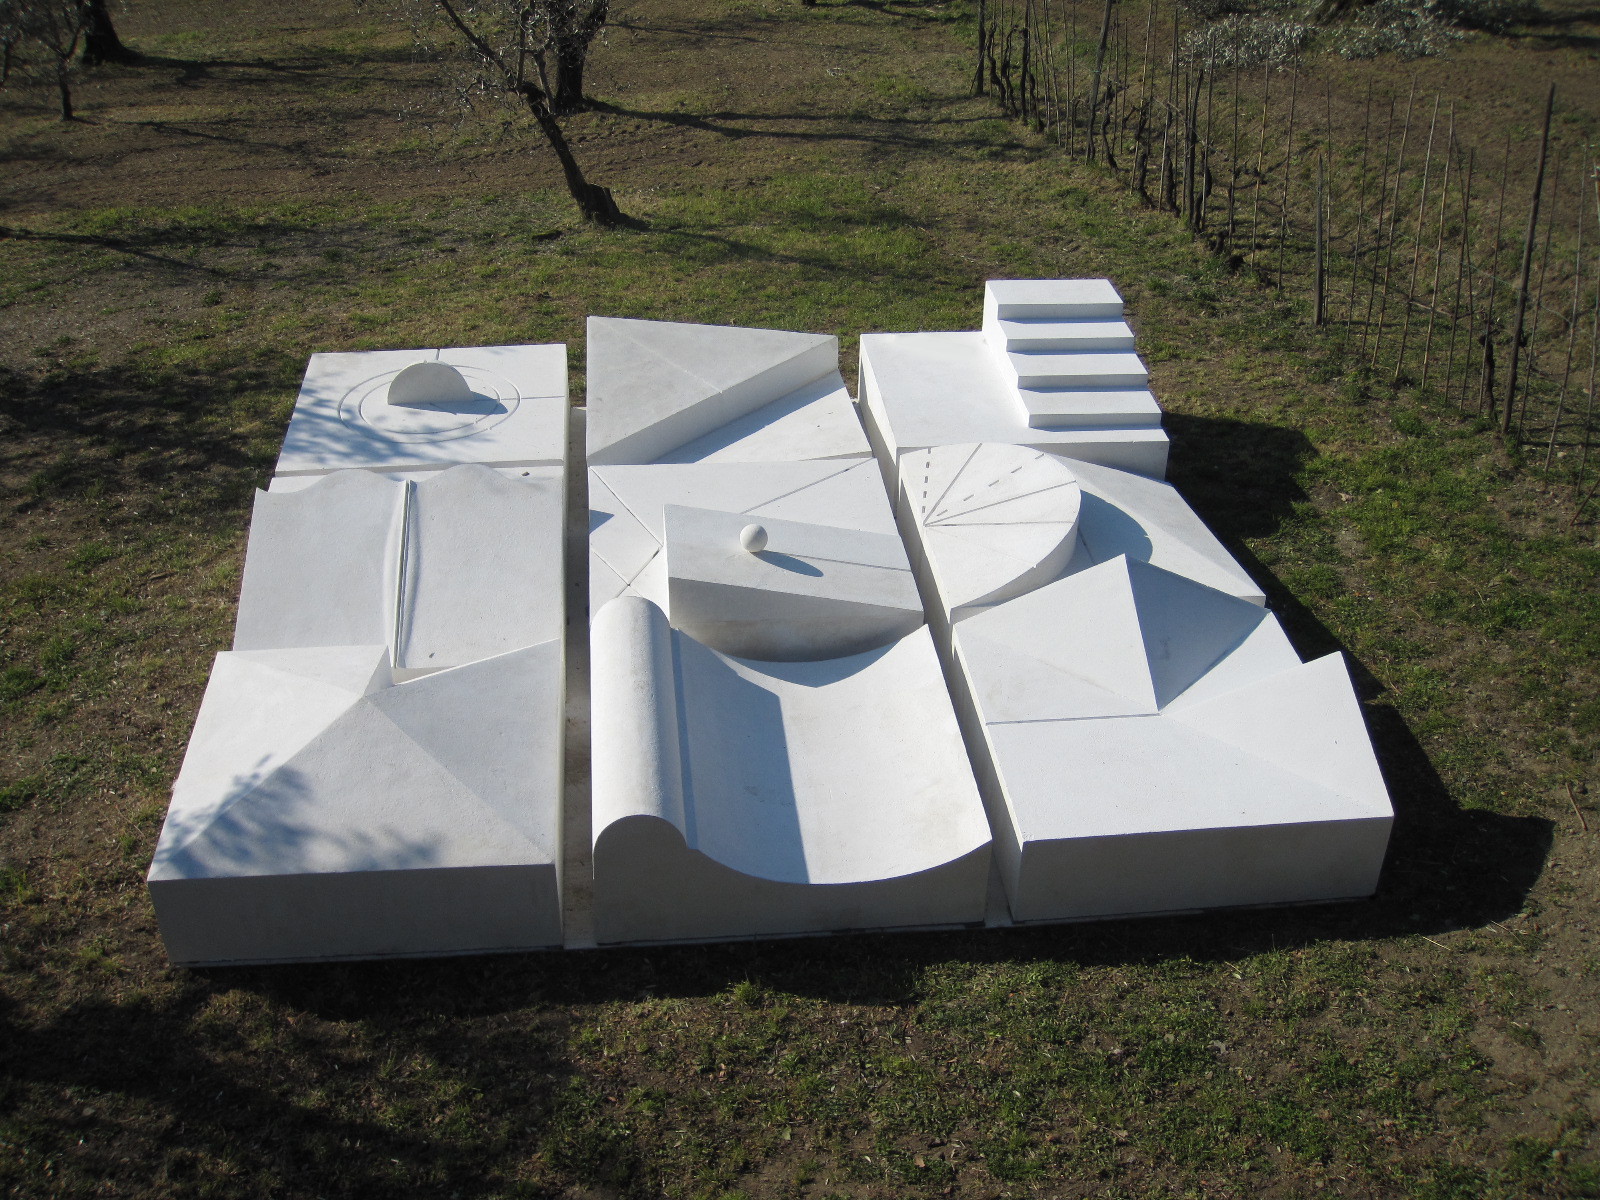 Fotografia di un'opera ambientale di Dani Karavan, una composizione di blocchi bianchi, di varie forme, poggiate su un terreno erboso.